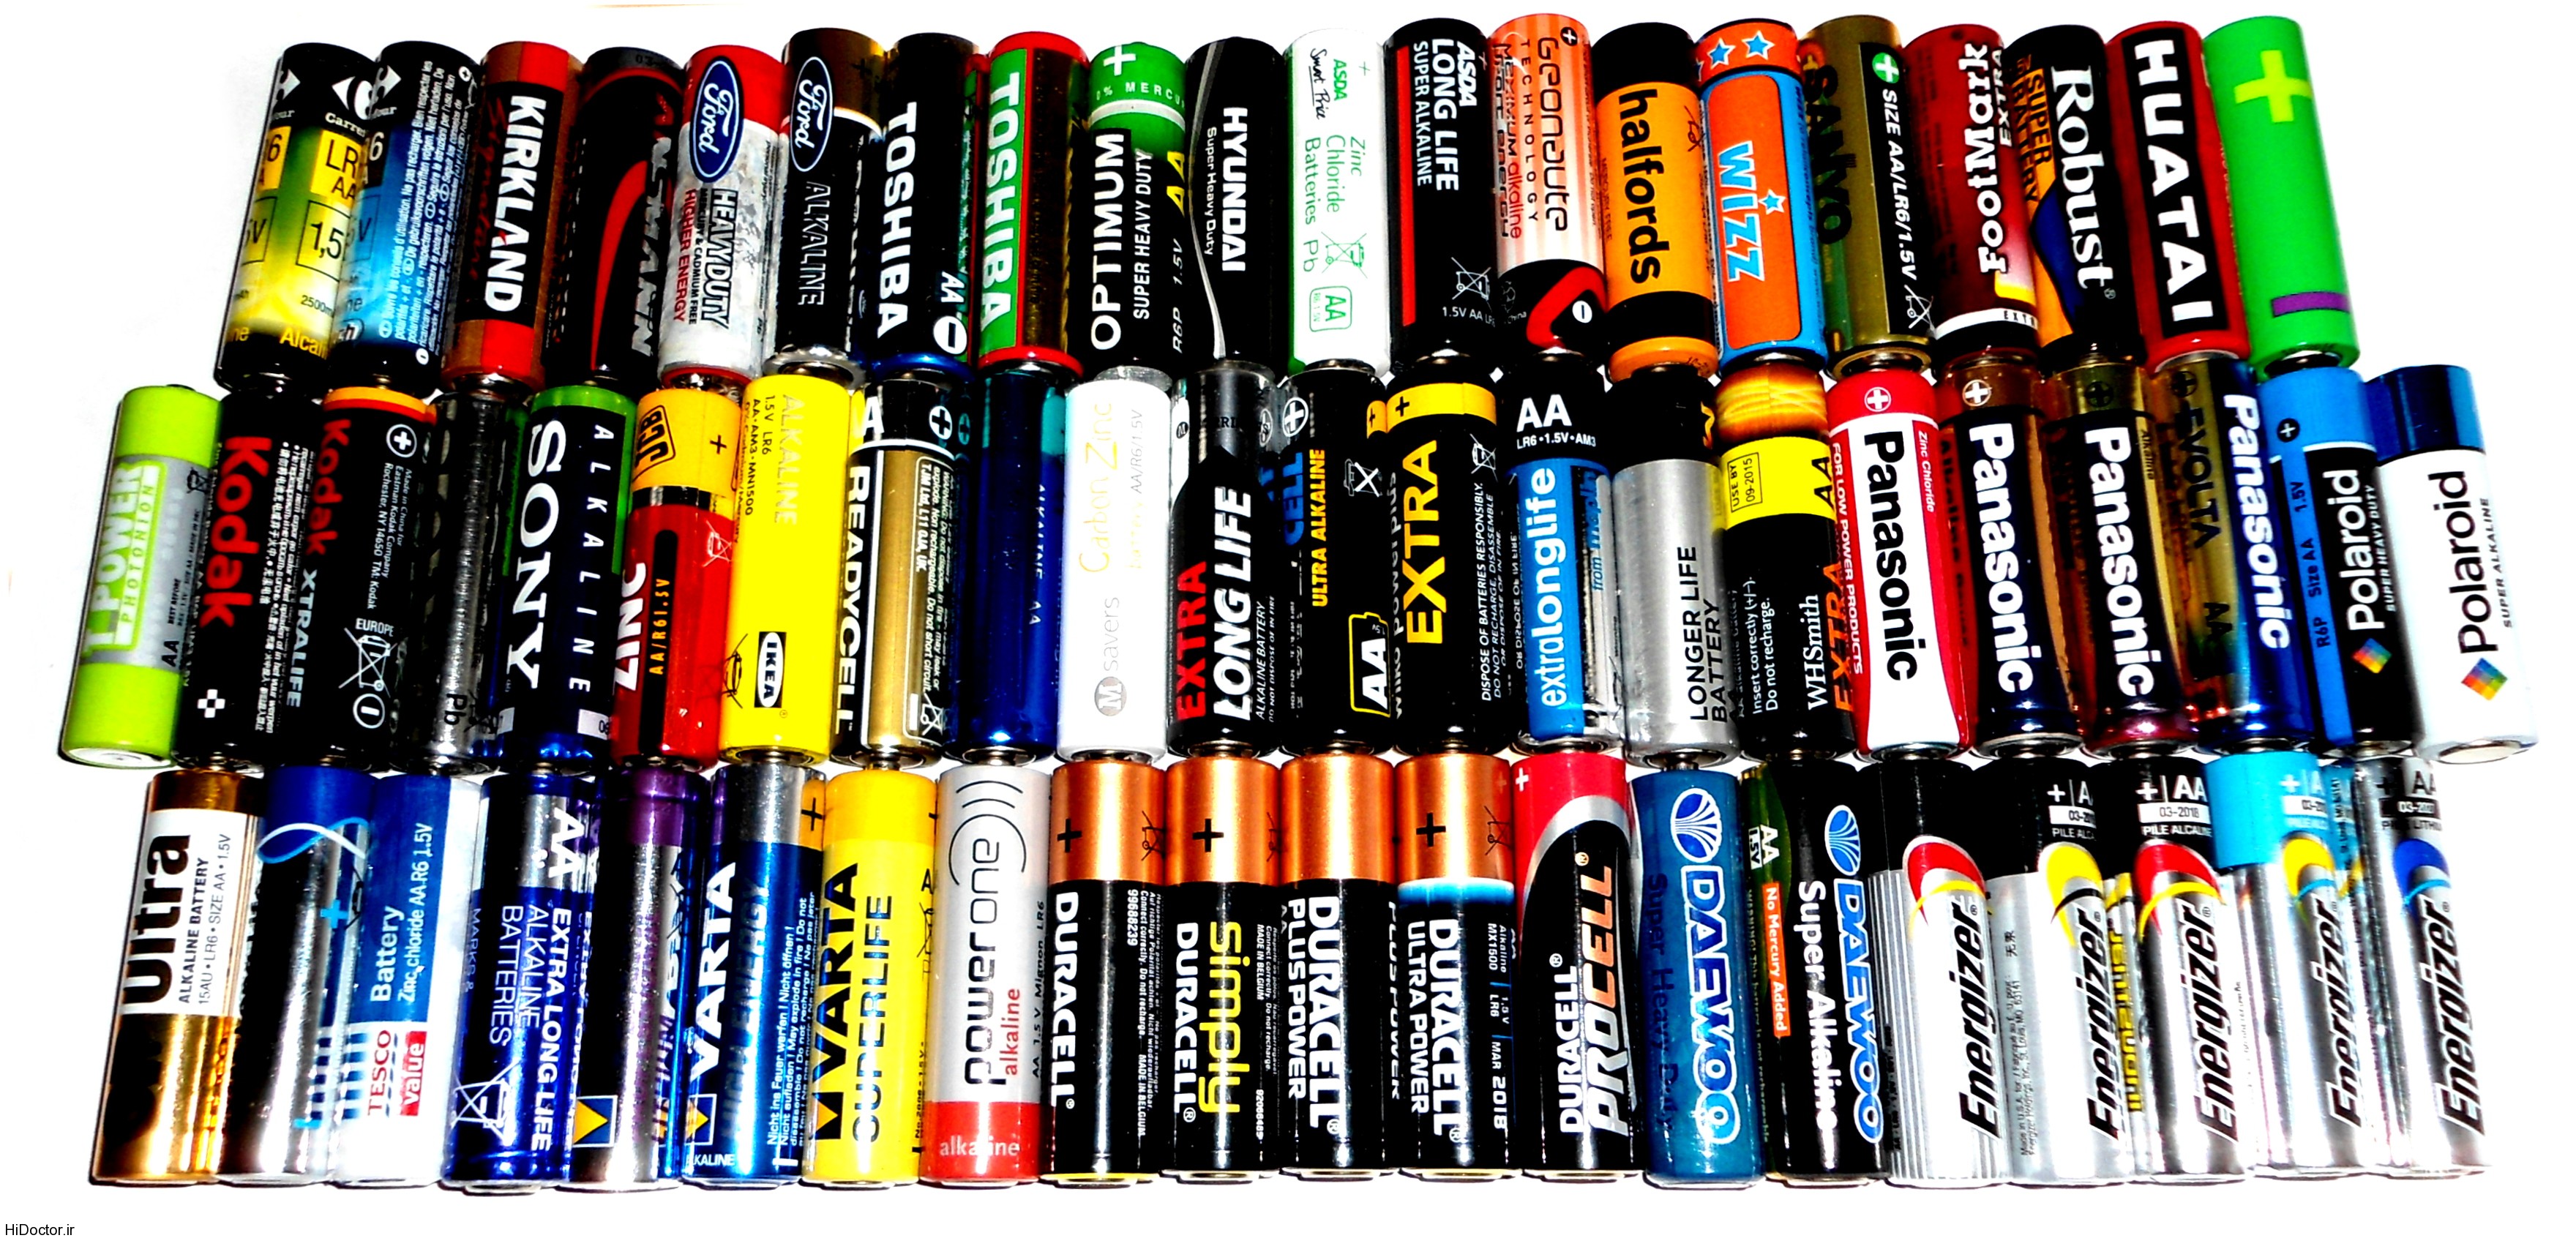 batteries-long-lrg